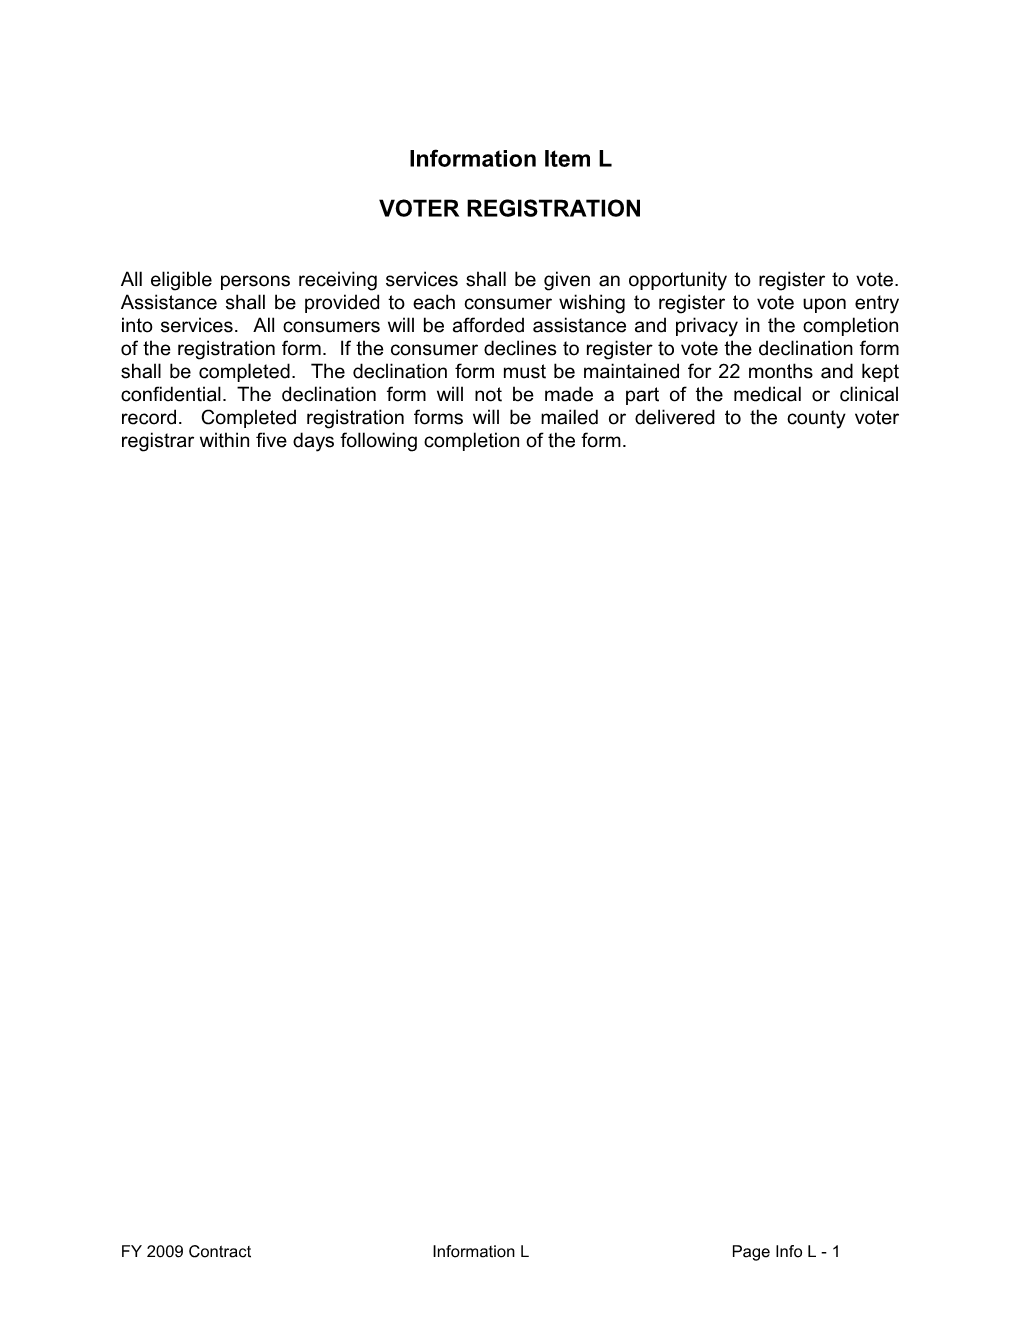 Info Item L Voter Registration